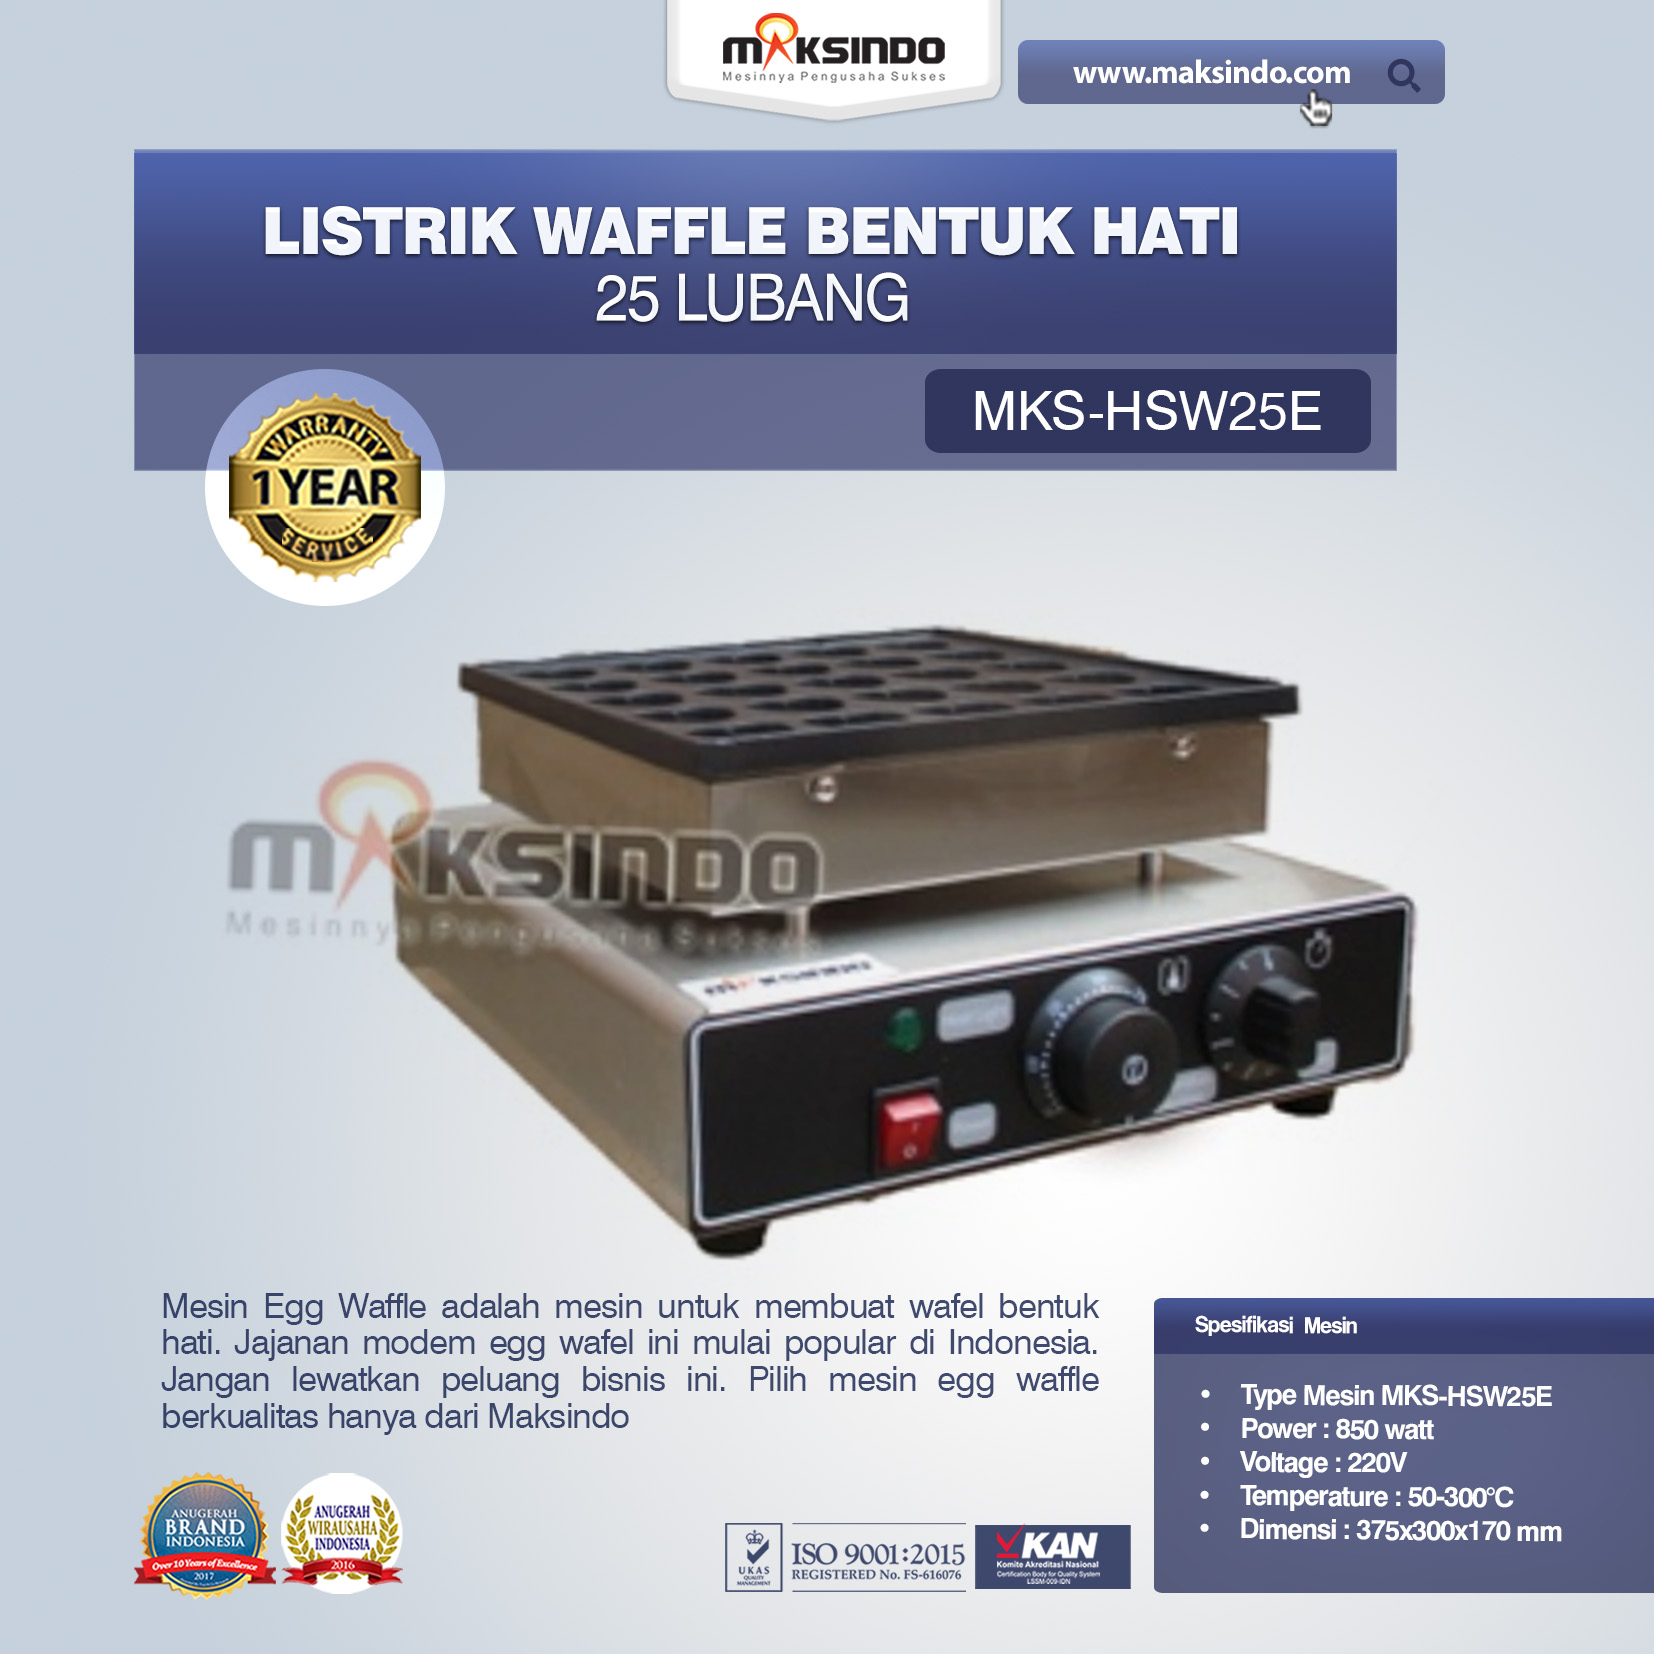 Jual Listrik Waffle Bentuk Hati 25 Lubang MKS-HSW25E di Palembang